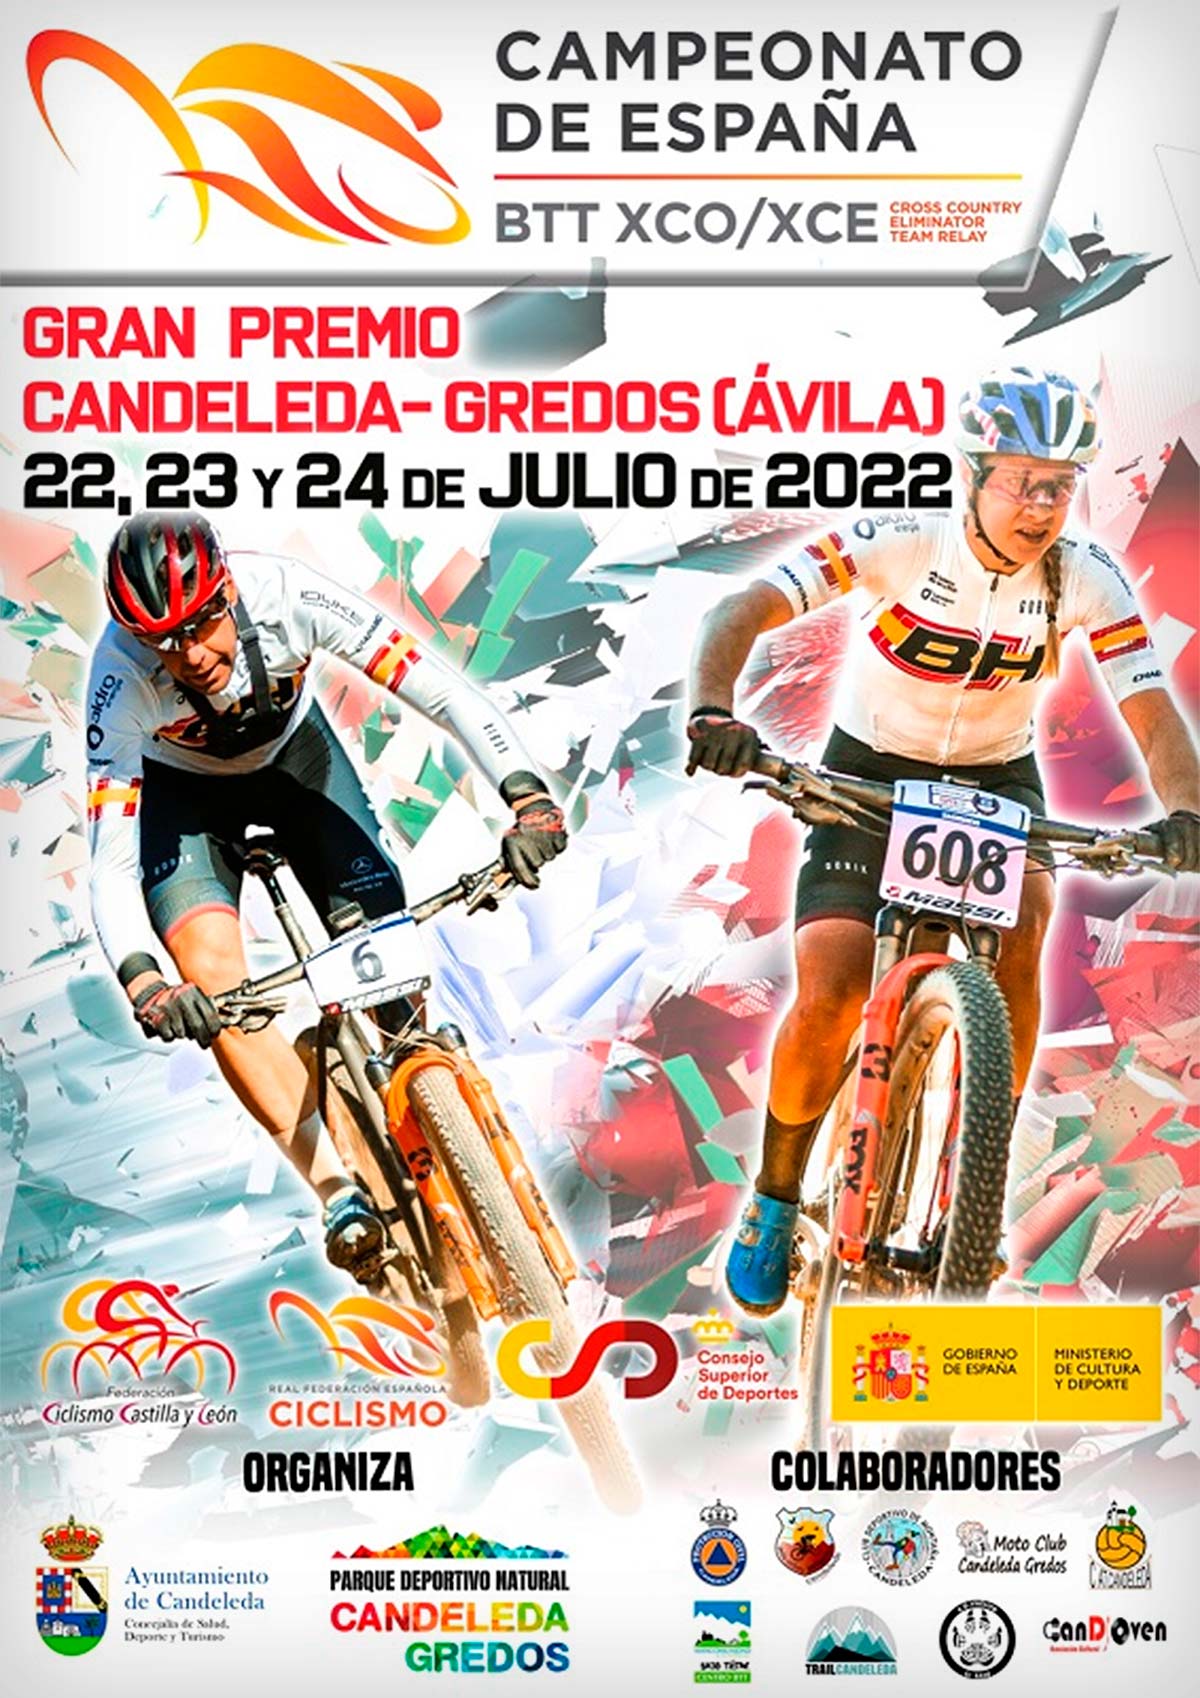 En TodoMountainBike: Todo a punto para el Campeonato de España de XCO-XCE 2022 en Candeleda